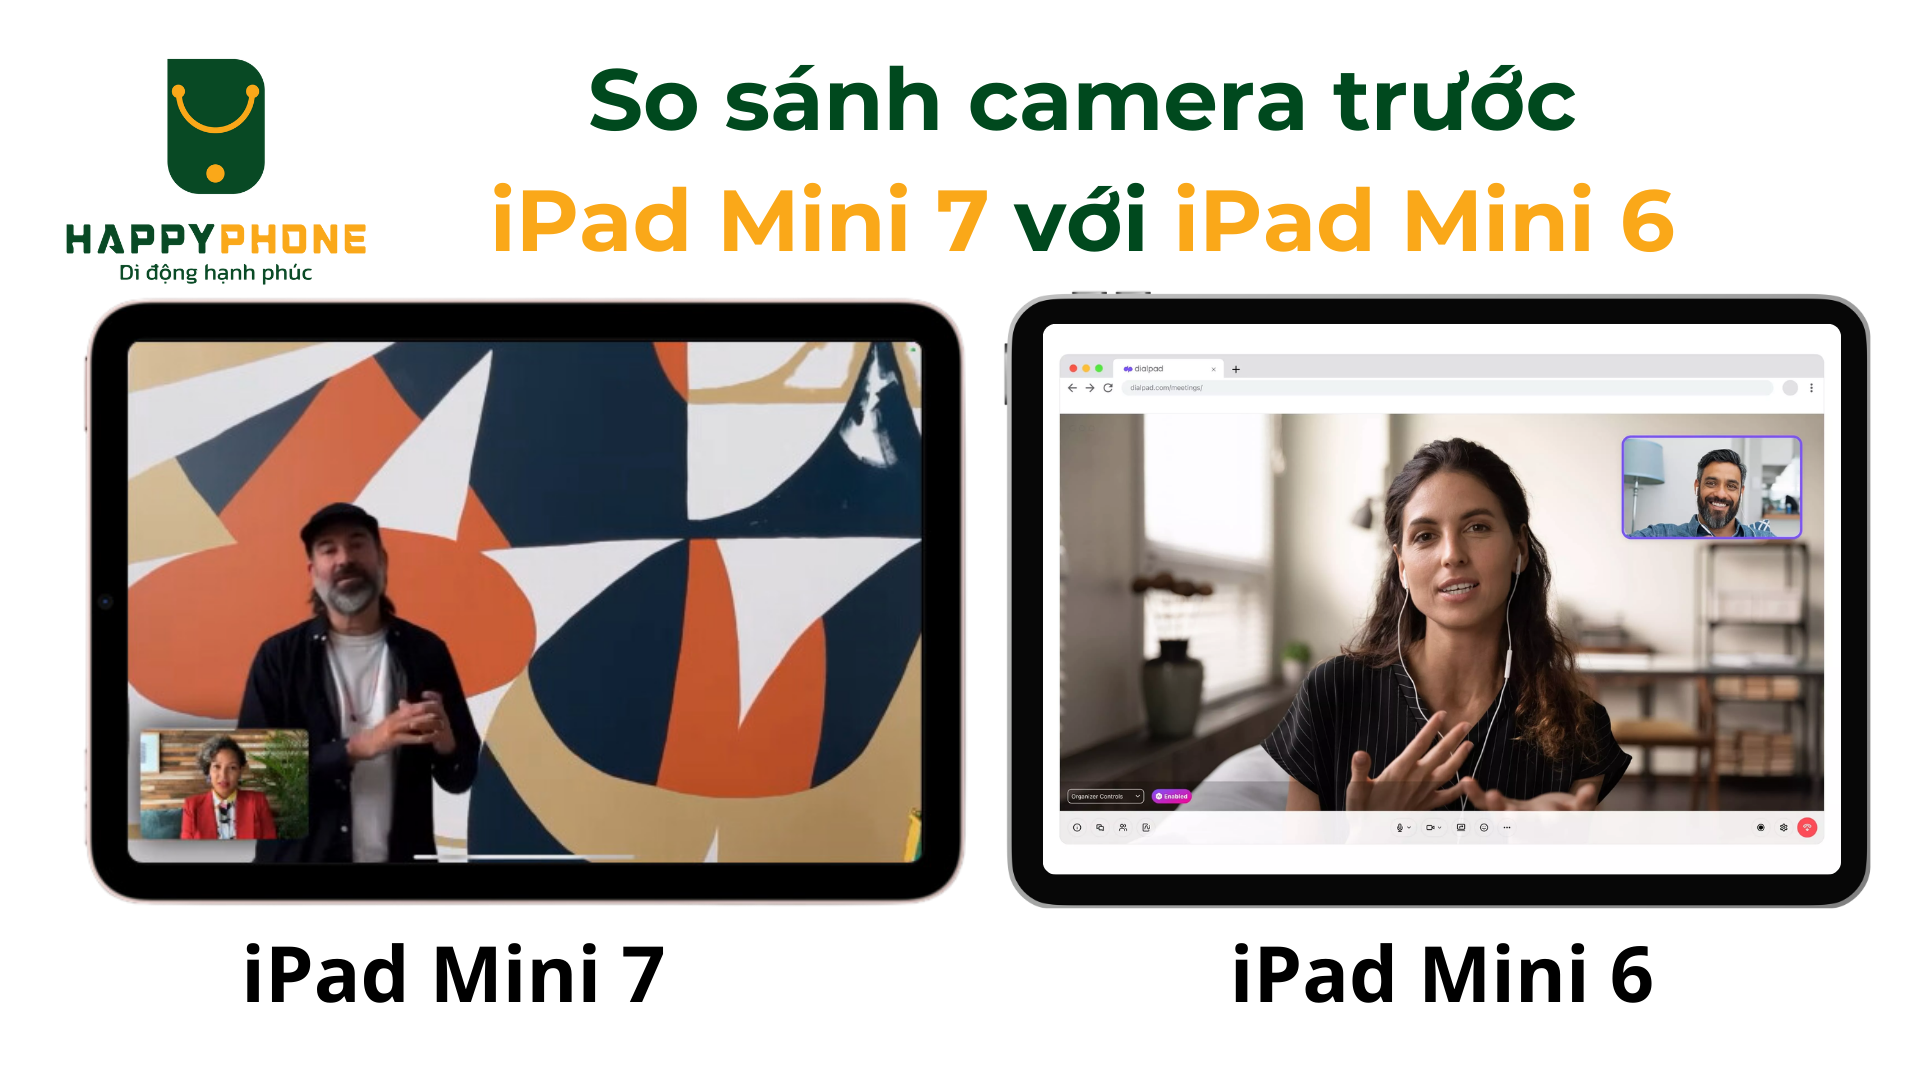 So sánh camera trước của iPad Mini 7 và iPad Mini 6